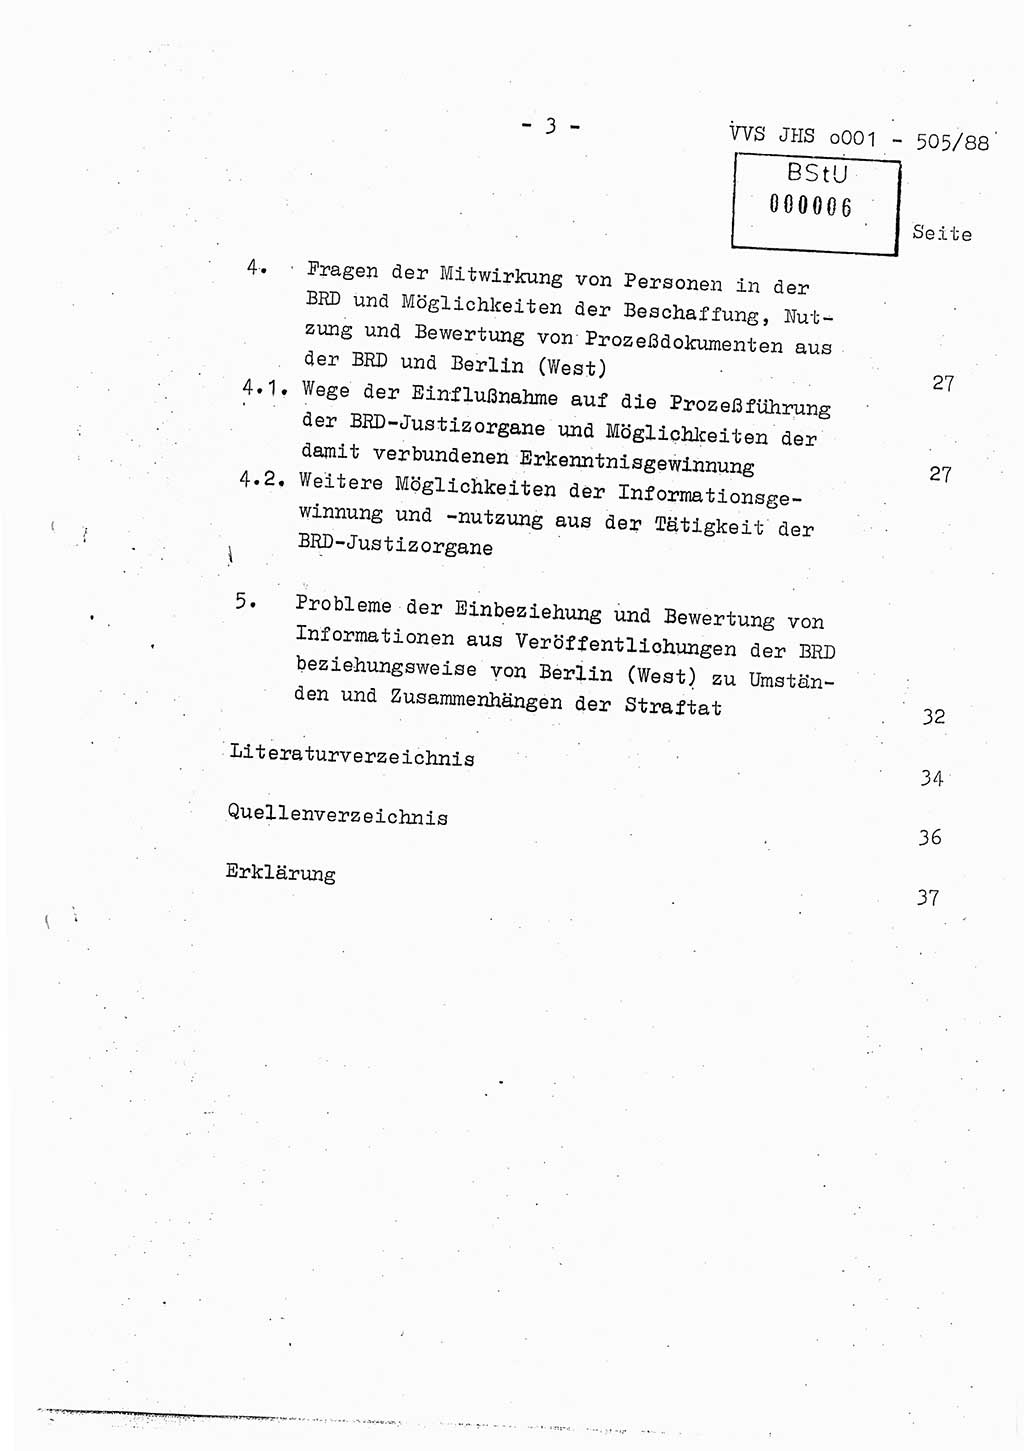 Diplomarbeit Leutnant Frank Schulze (HA Ⅸ/9), Ministerium für Staatssicherheit (MfS) [Deutsche Demokratische Republik (DDR)], Juristische Hochschule (JHS), Vertrauliche Verschlußsache (VVS) o001-505/88, Potsdam 1988, Seite 3 (Dipl.-Arb. MfS DDR JHS VVS o001-505/88 1988, S. 3)